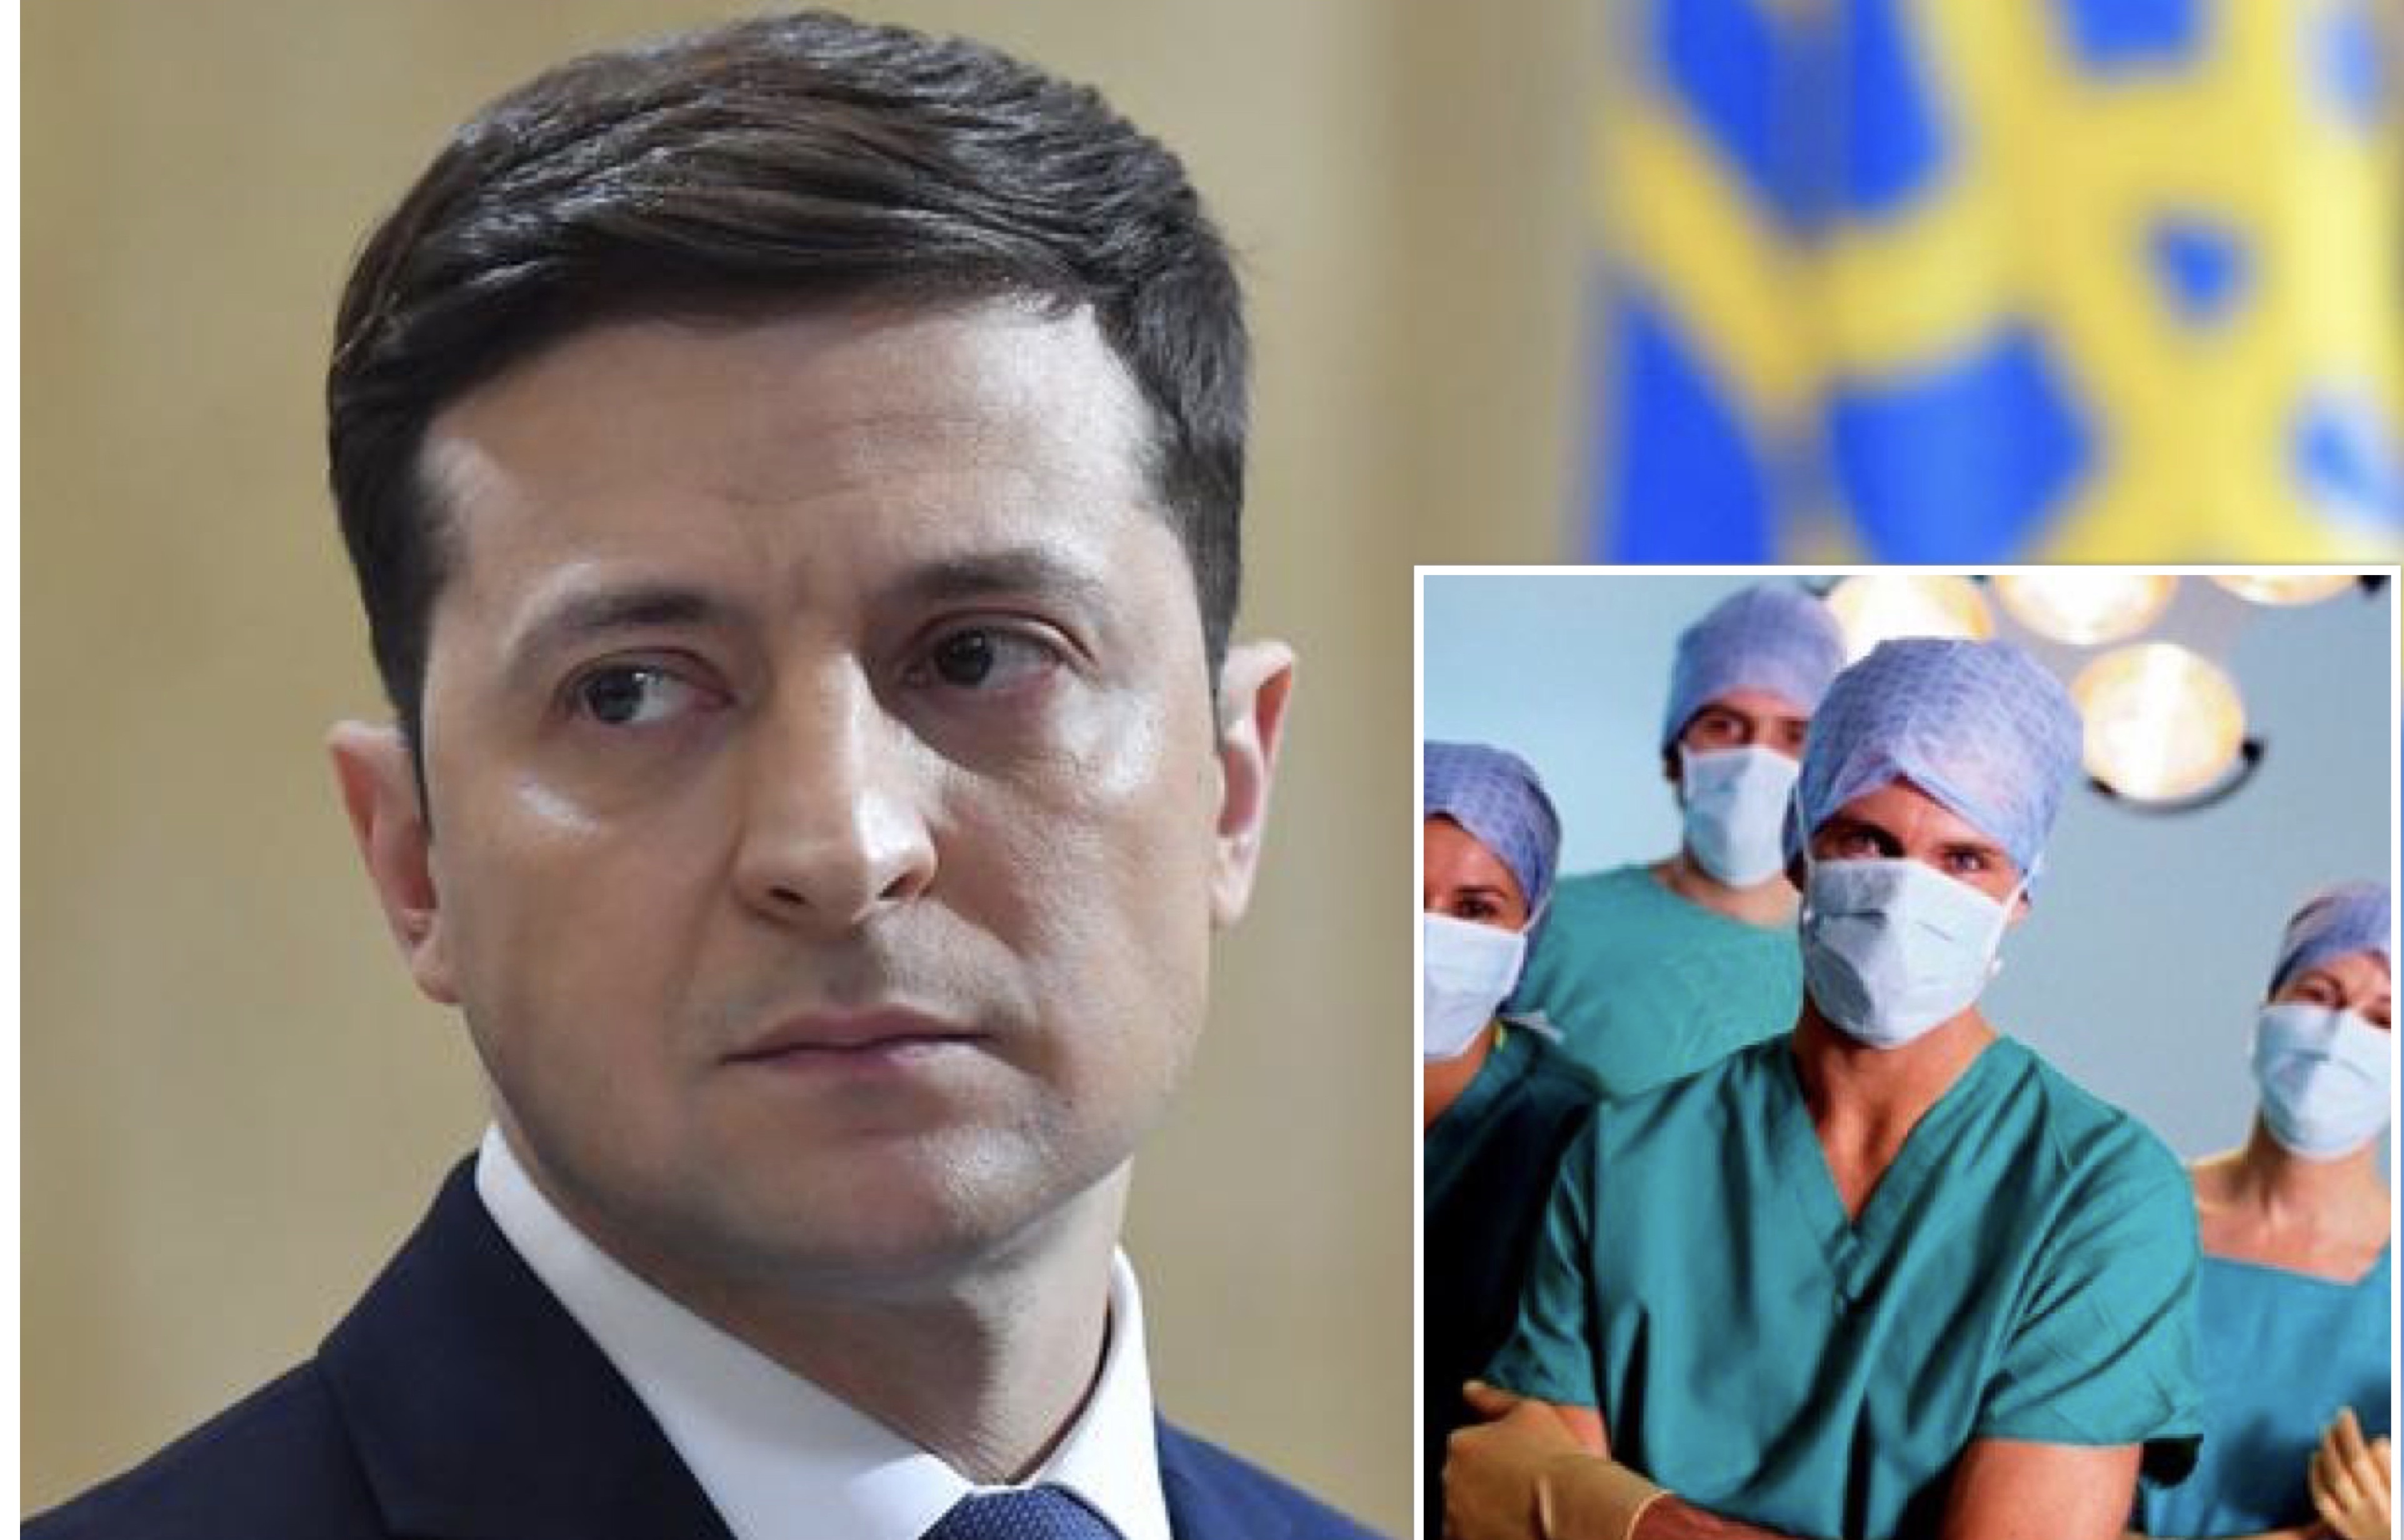 Зеленский не против если украинские медики поедут работать в Италию